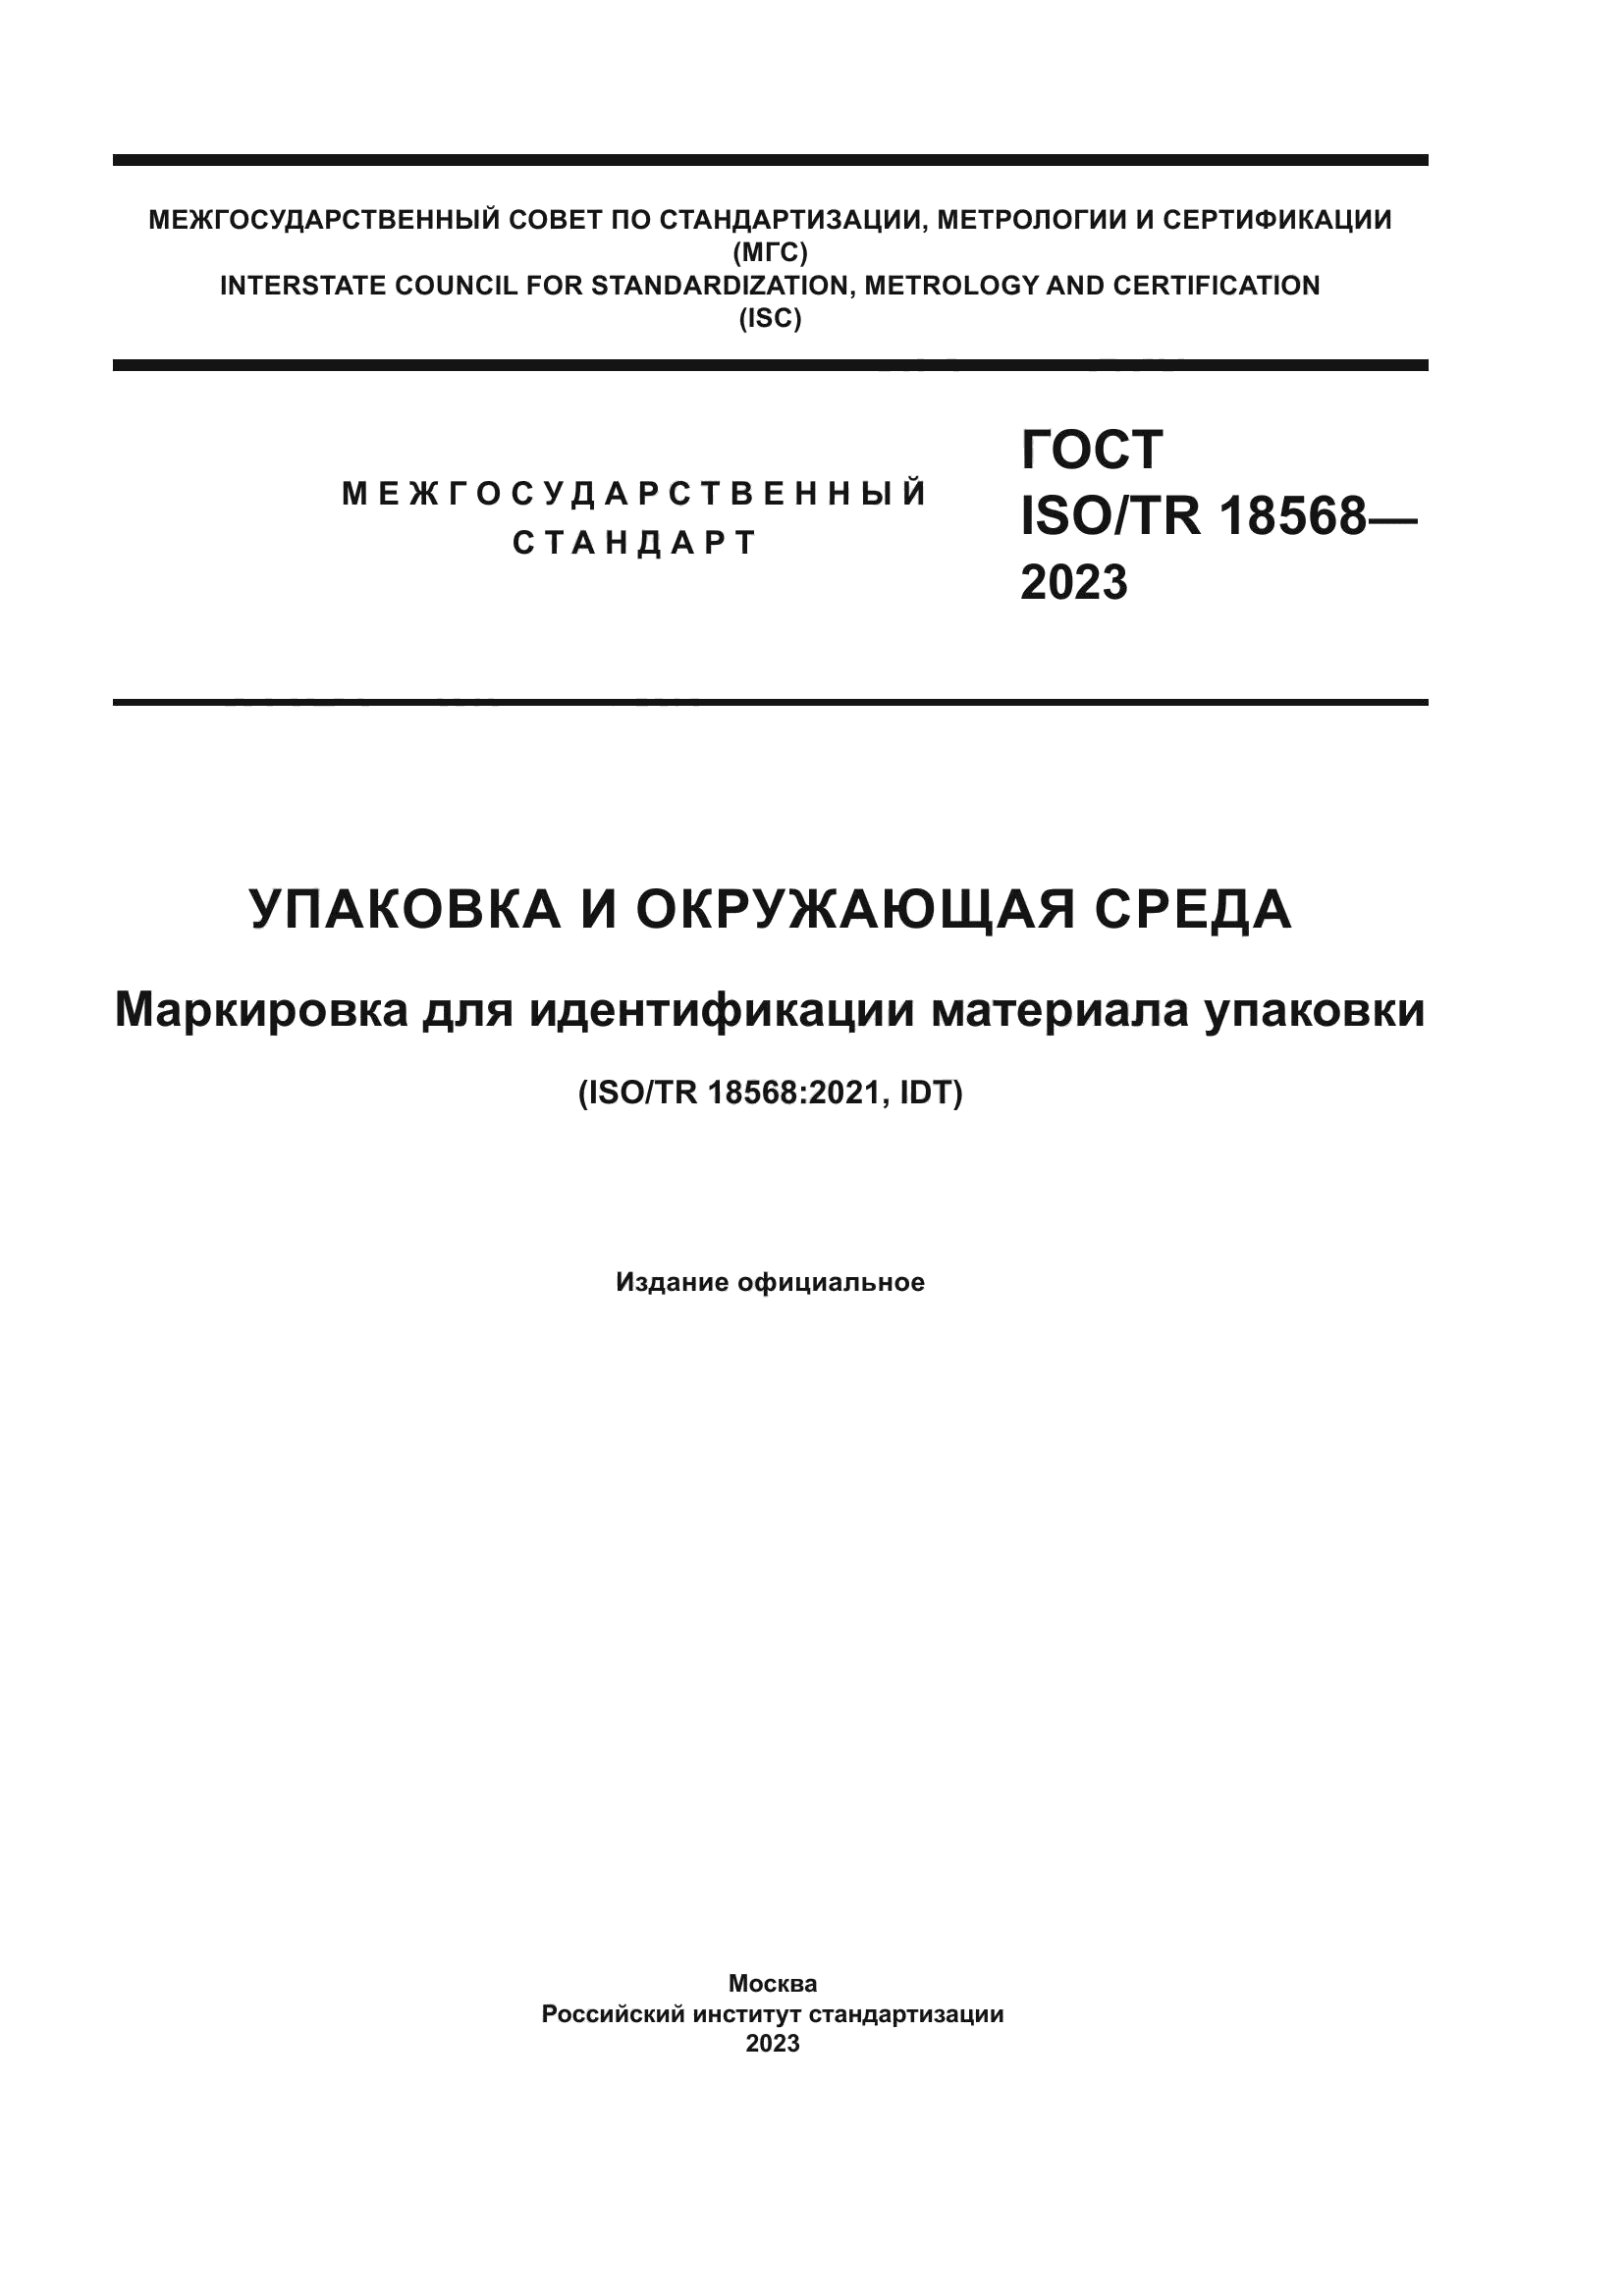 ГОСТ ISO/TR 18568-2023